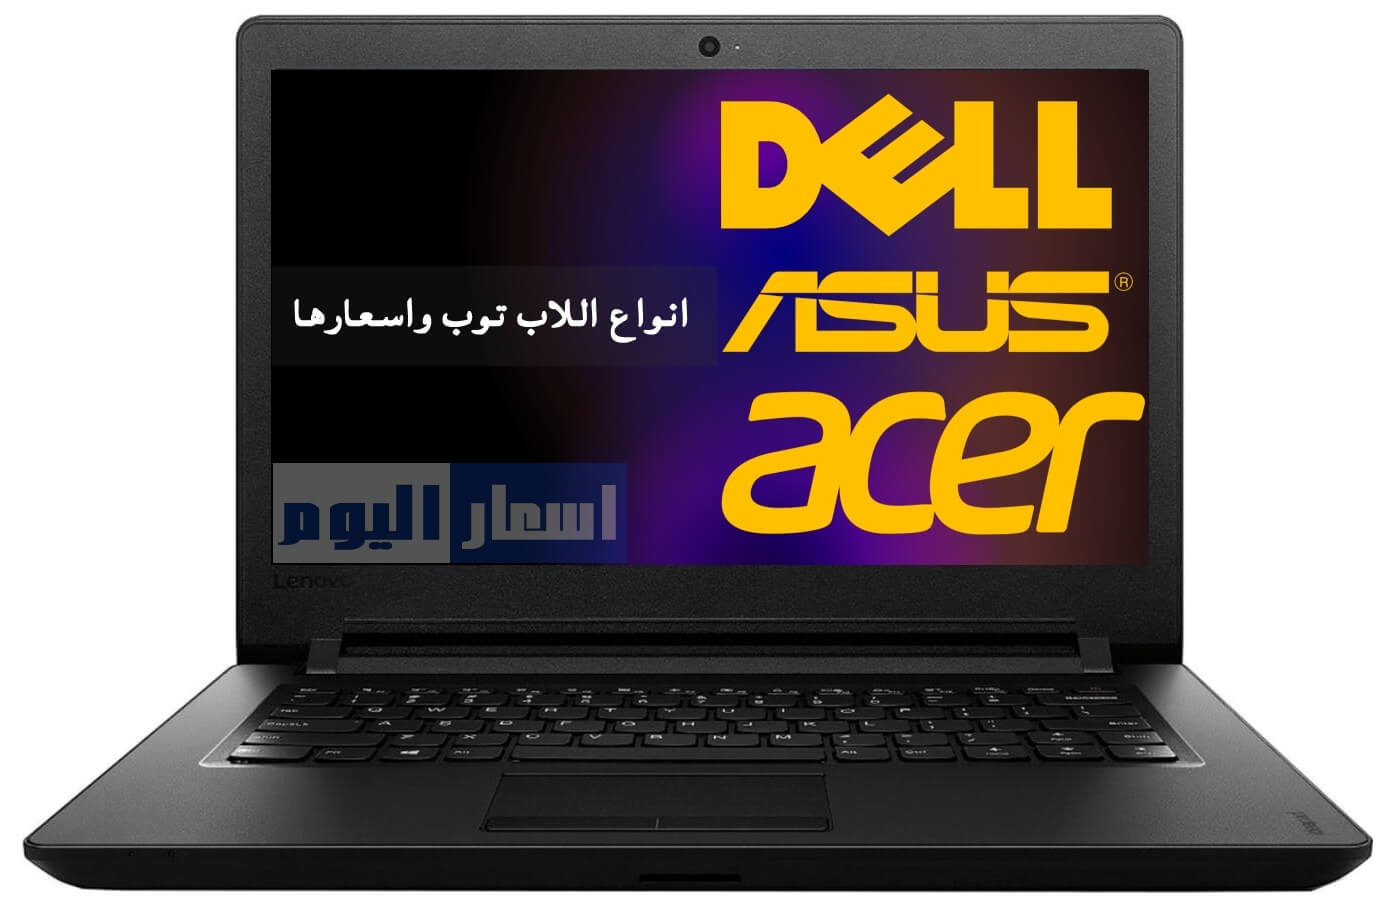 البصيرة معرفة القراءة والكتابة رعب  اسعار اللاب توب فى مصر 2022 جميع الماركات - Laptops Prices in Egypt 2022